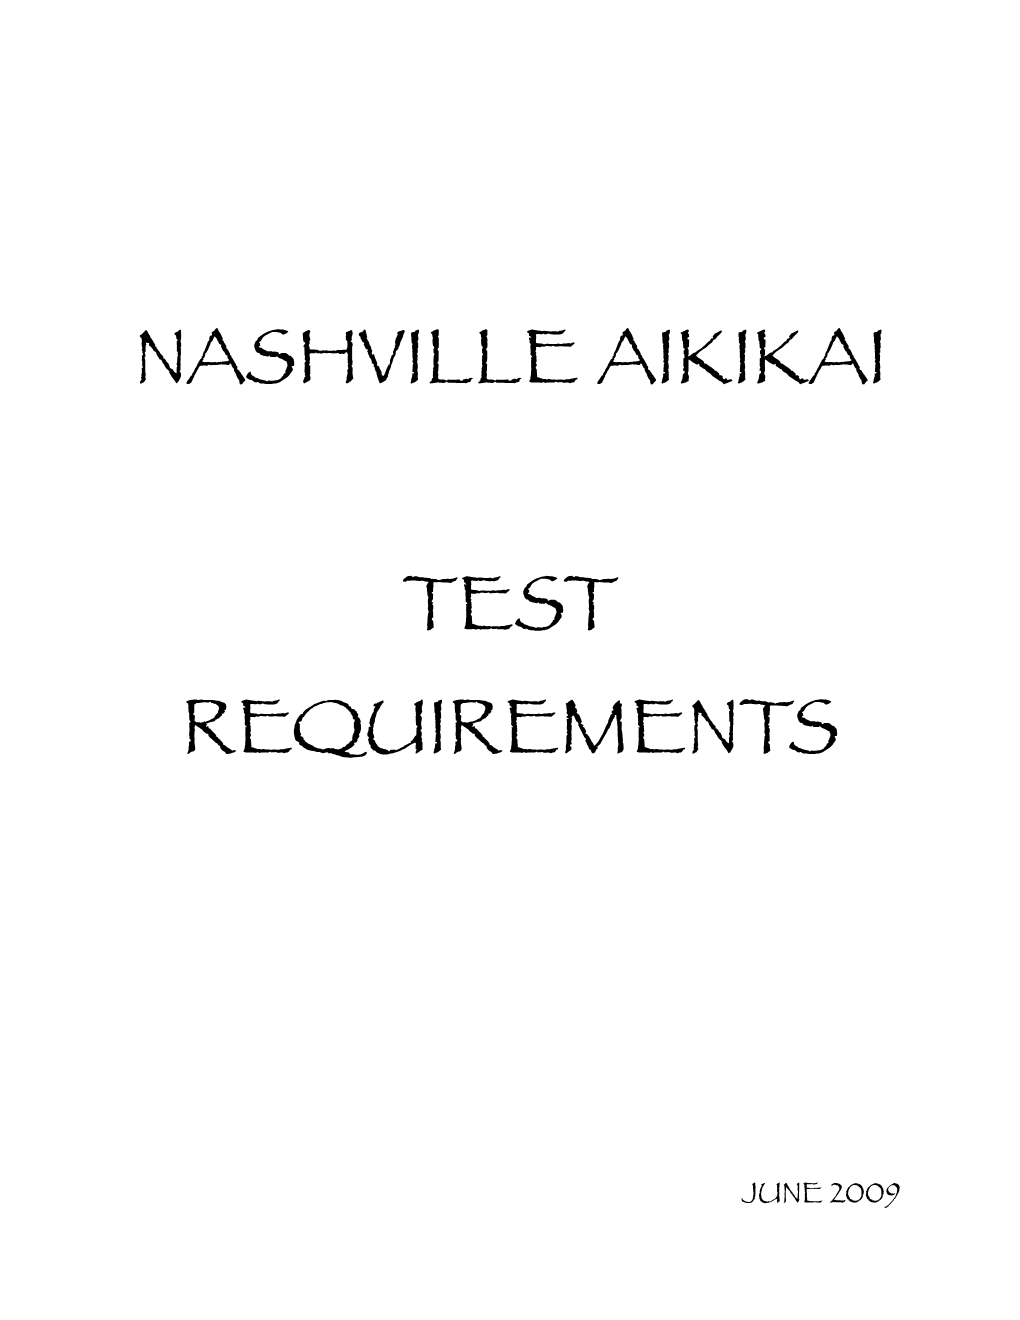 Nashville Aikikai Test Requirements